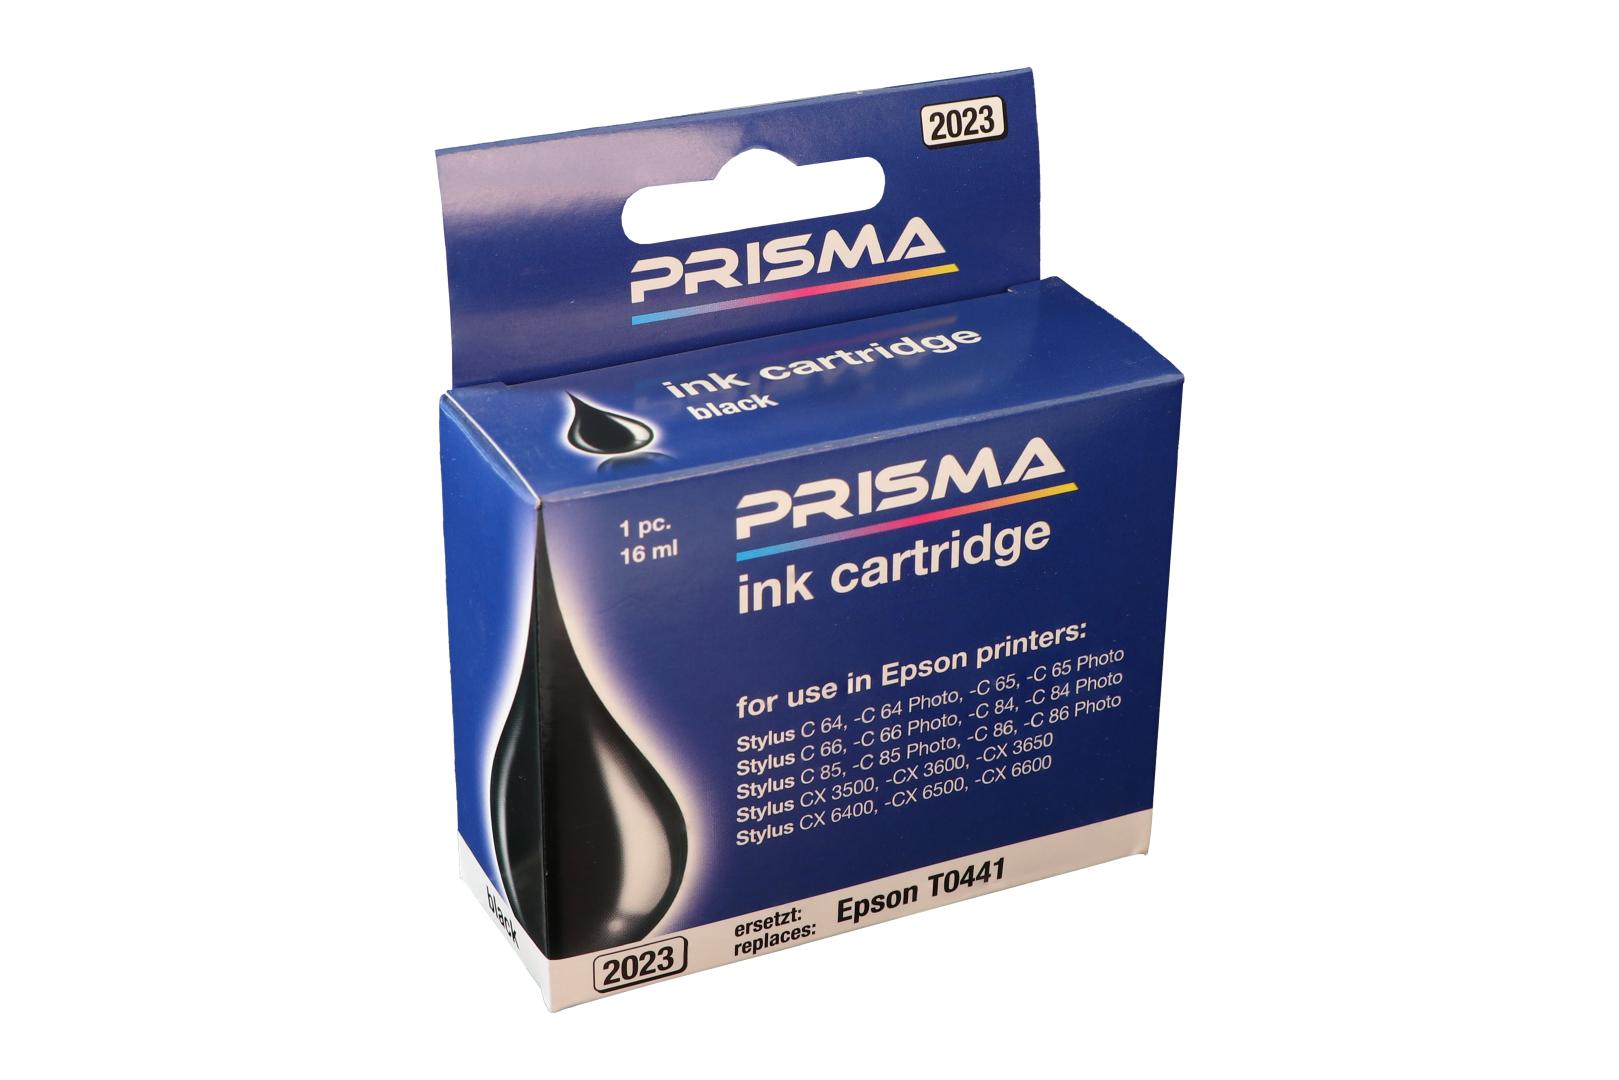 PRISMA 2023 Druckerpatrone für Epson Tintenstrahldrucker, schwarz, 16 ml